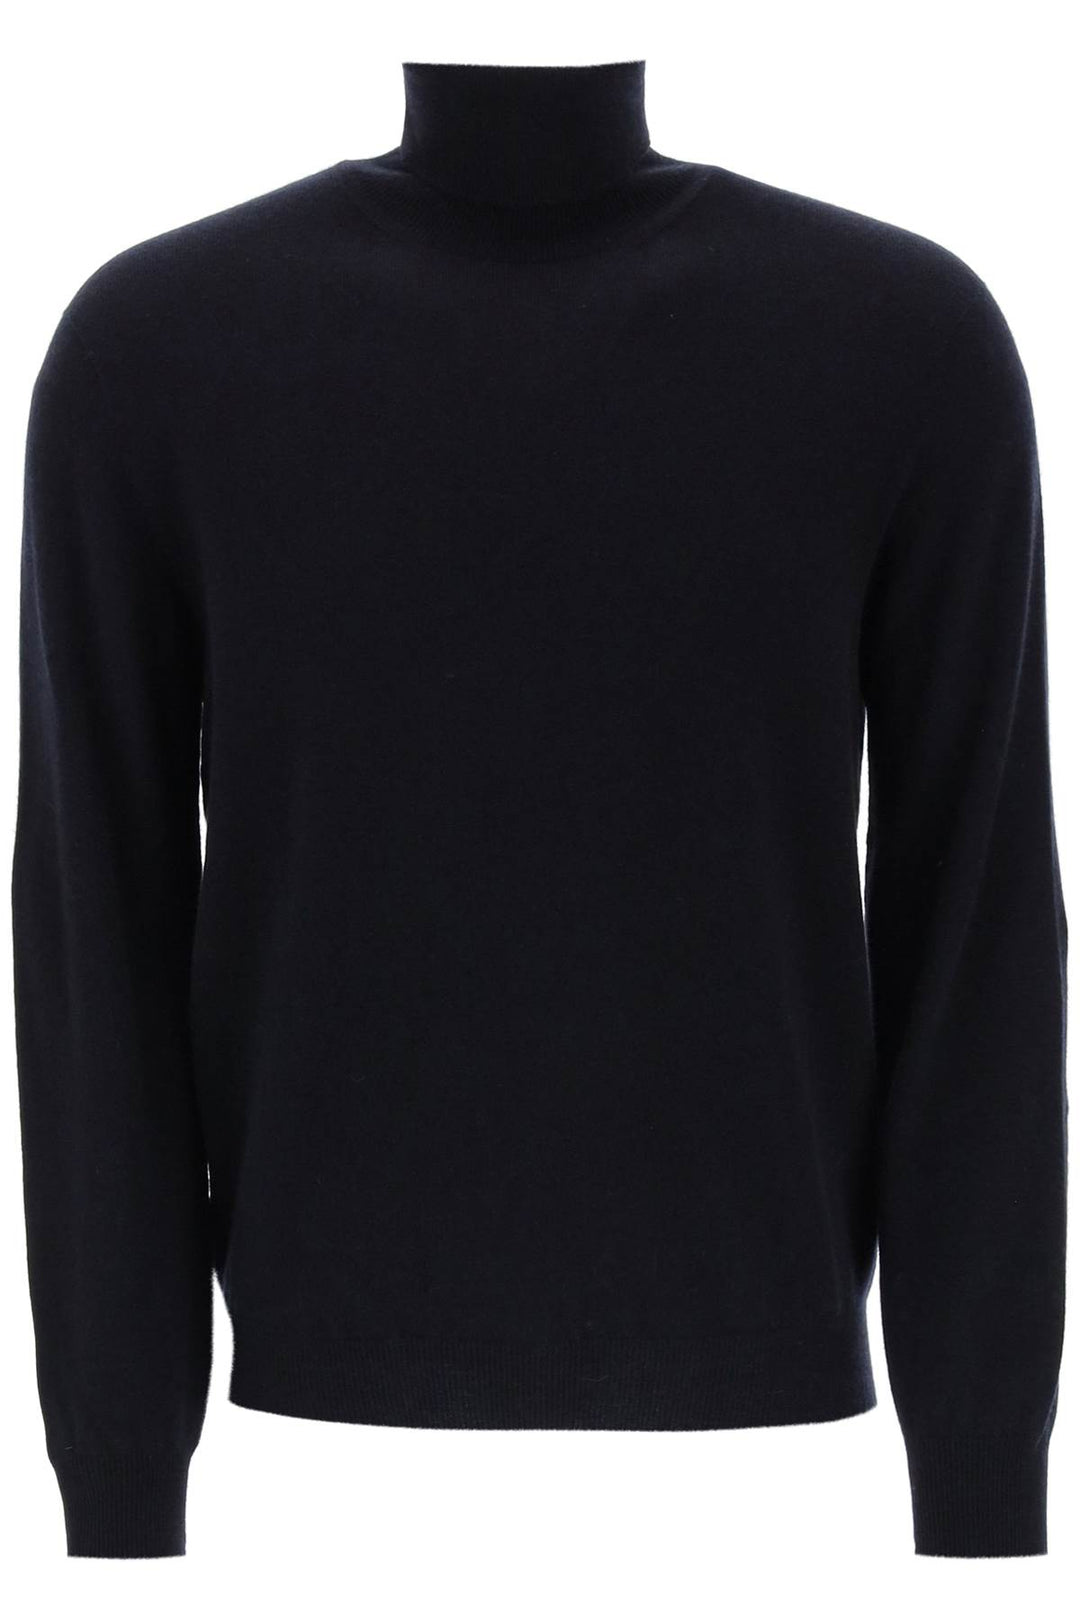 Agnona seamless cashmere turtleneck sweater-0